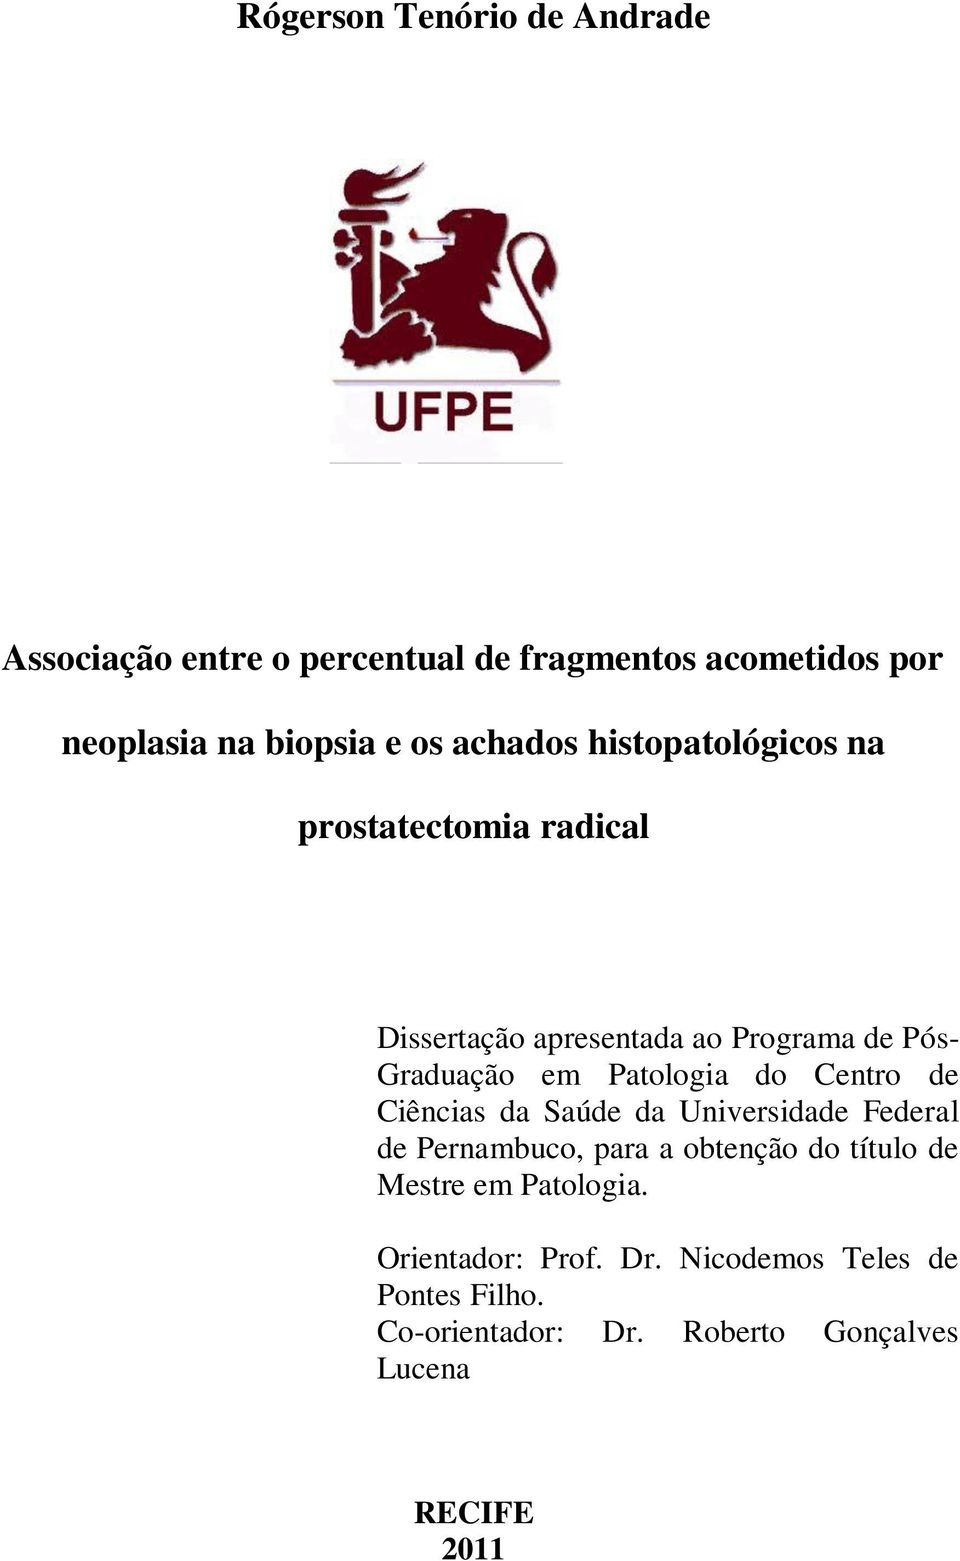 Patologia do Centro de Ciências da Saúde da Universidade Federal de Pernambuco, para a obtenção do título de Mestre